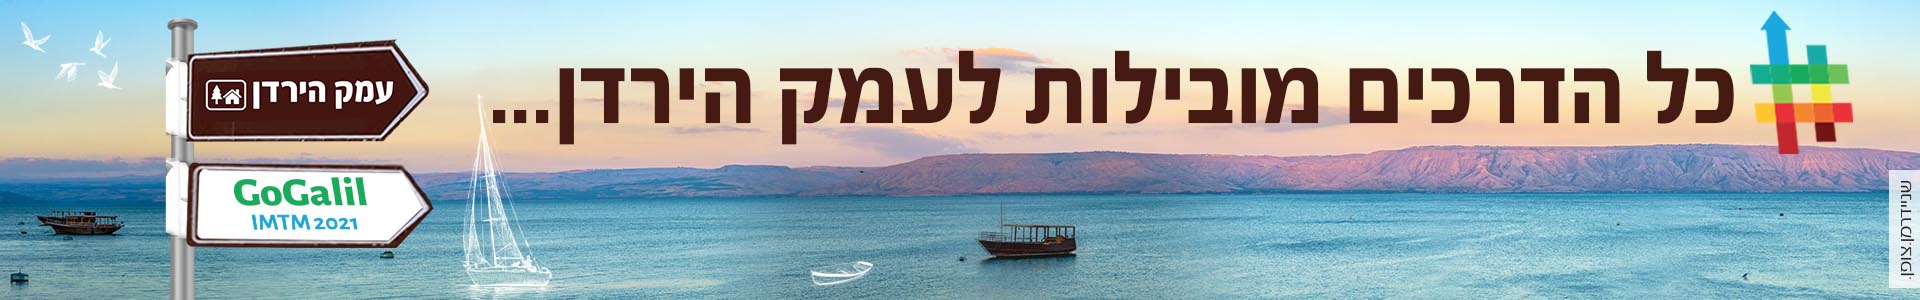 עמק הירדן - מועצה אזורית